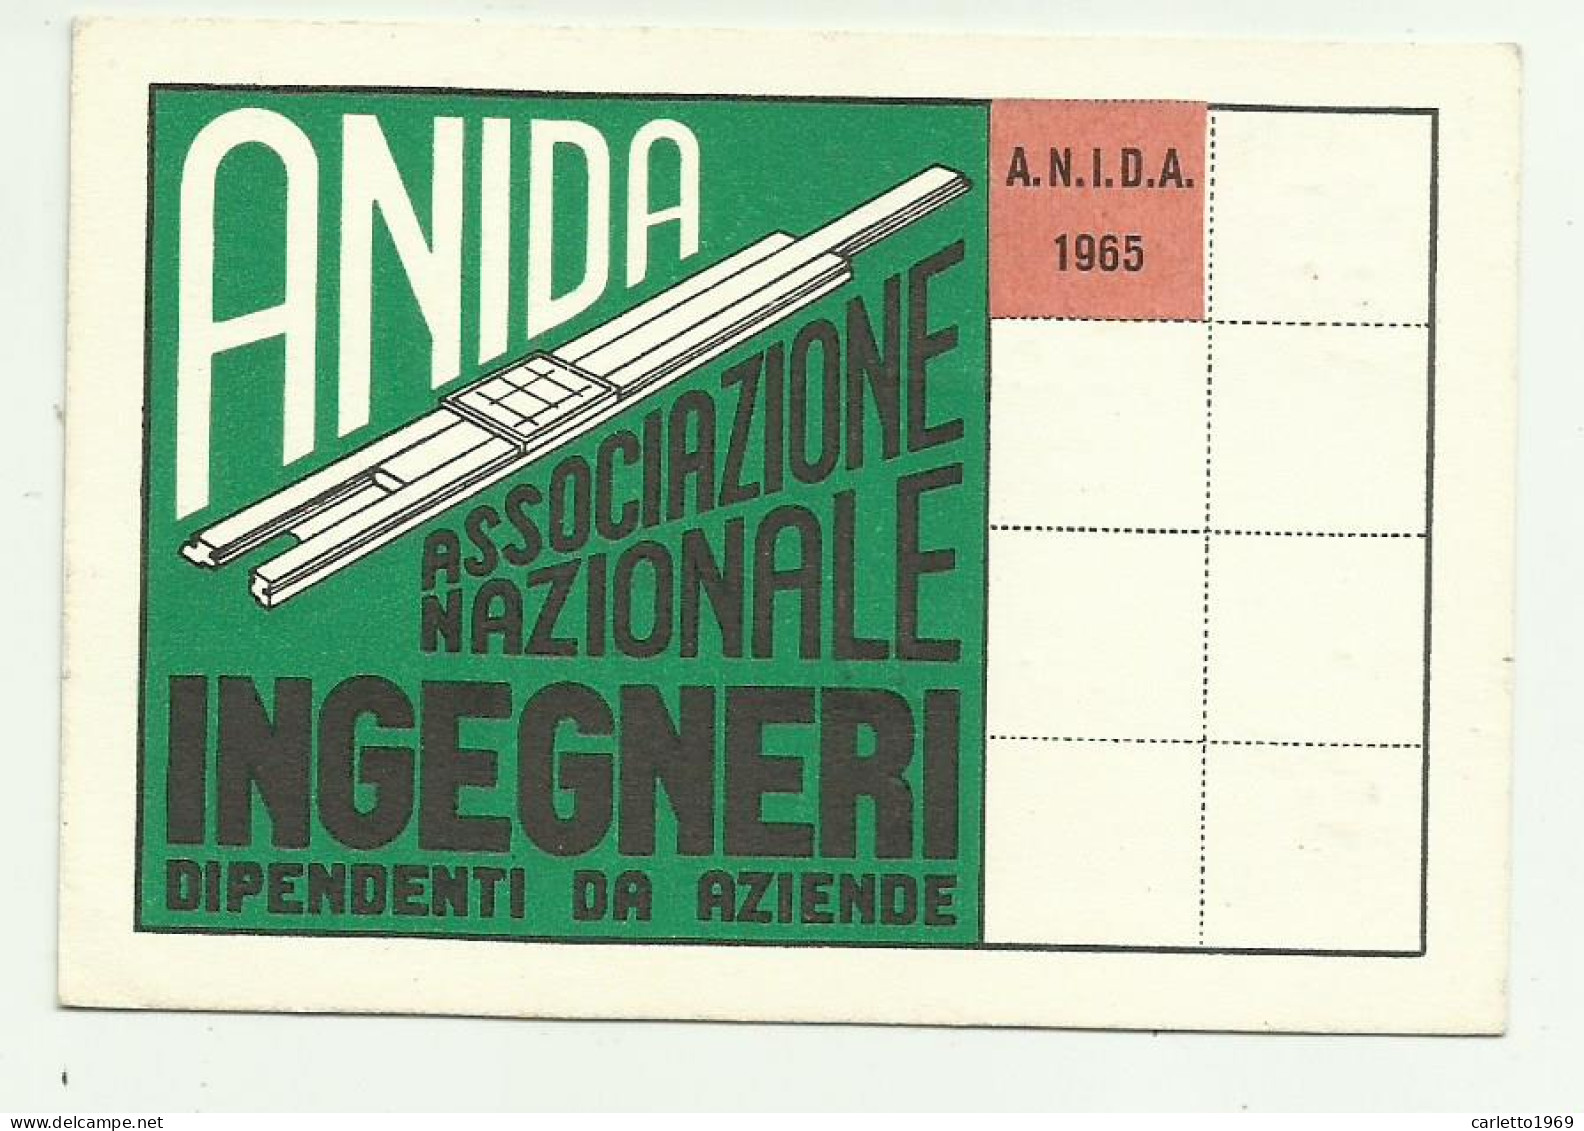 TESSERA ANIDA INGEGNERI 1965 - Membership Cards